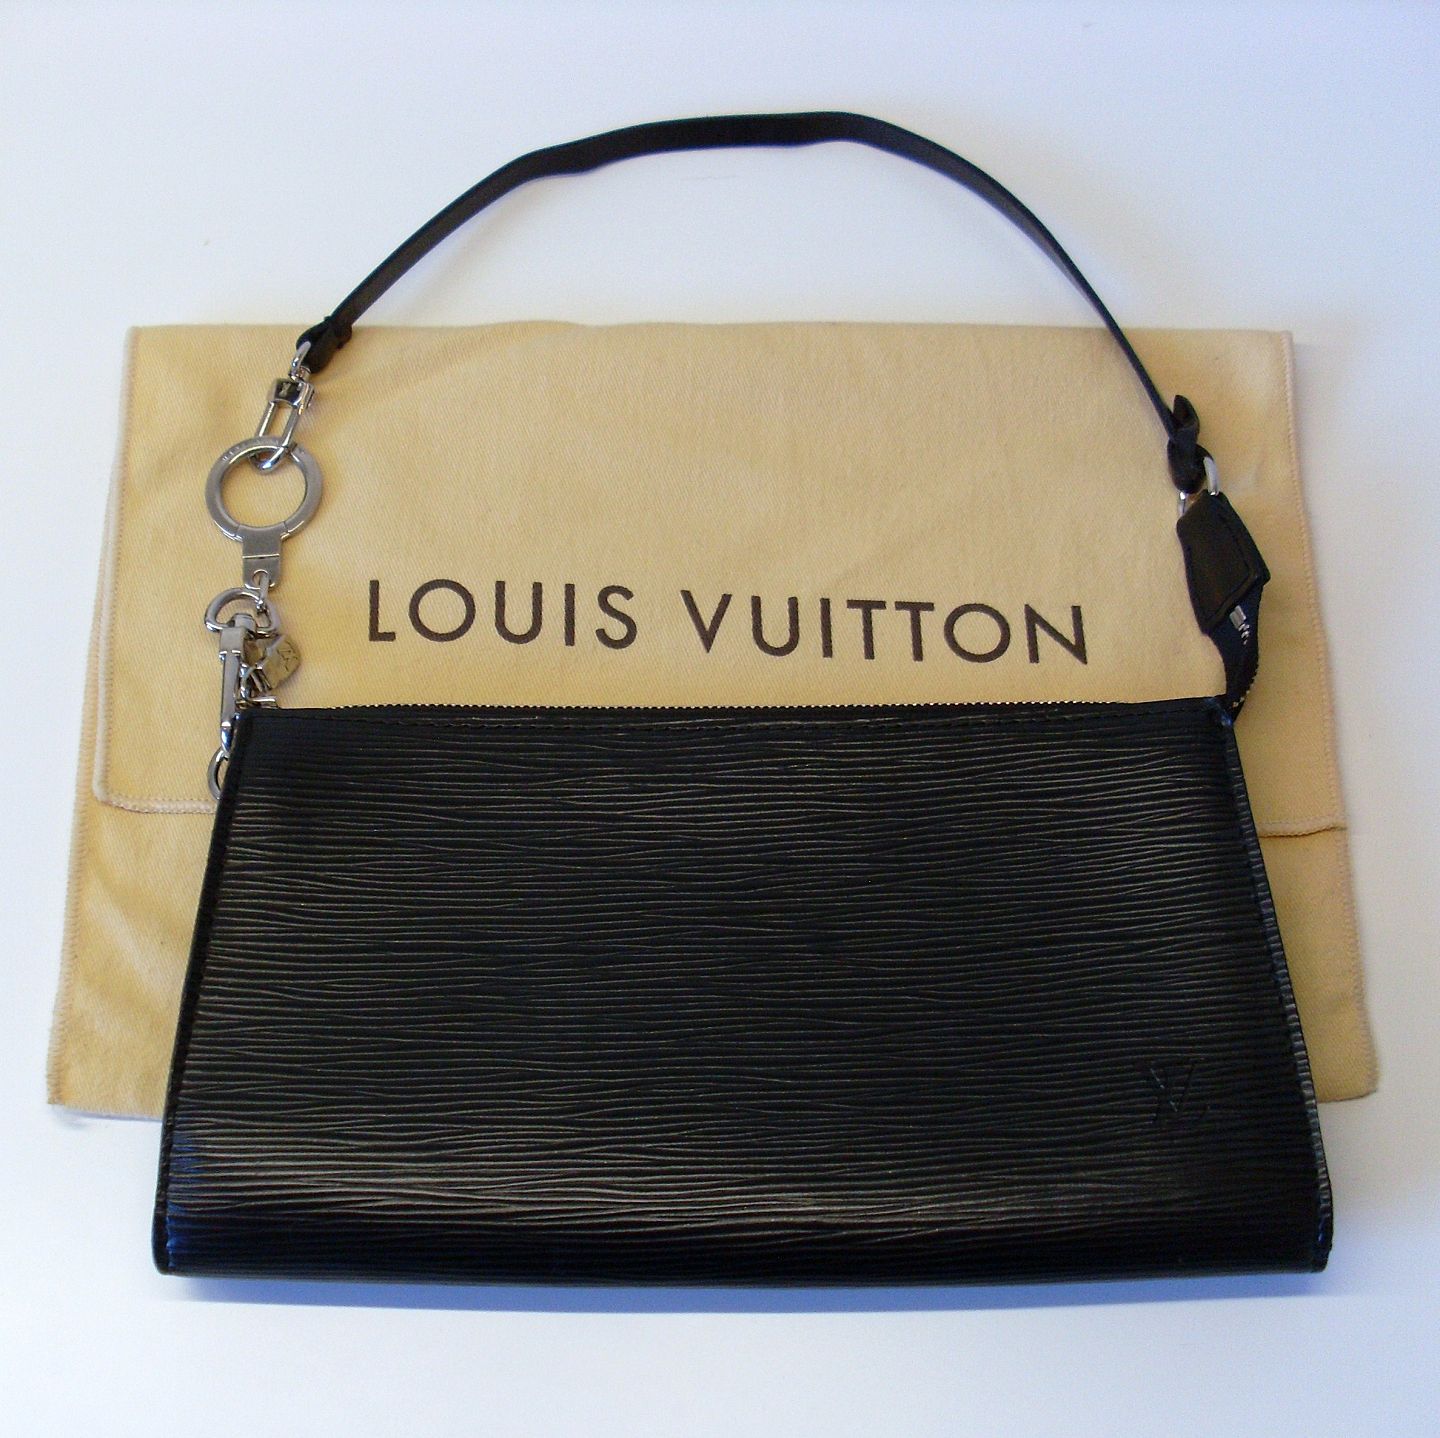 En sætning Afbrydelse vest www.Antikvitet.net - Louis Vuitton taske i sort EPI læder